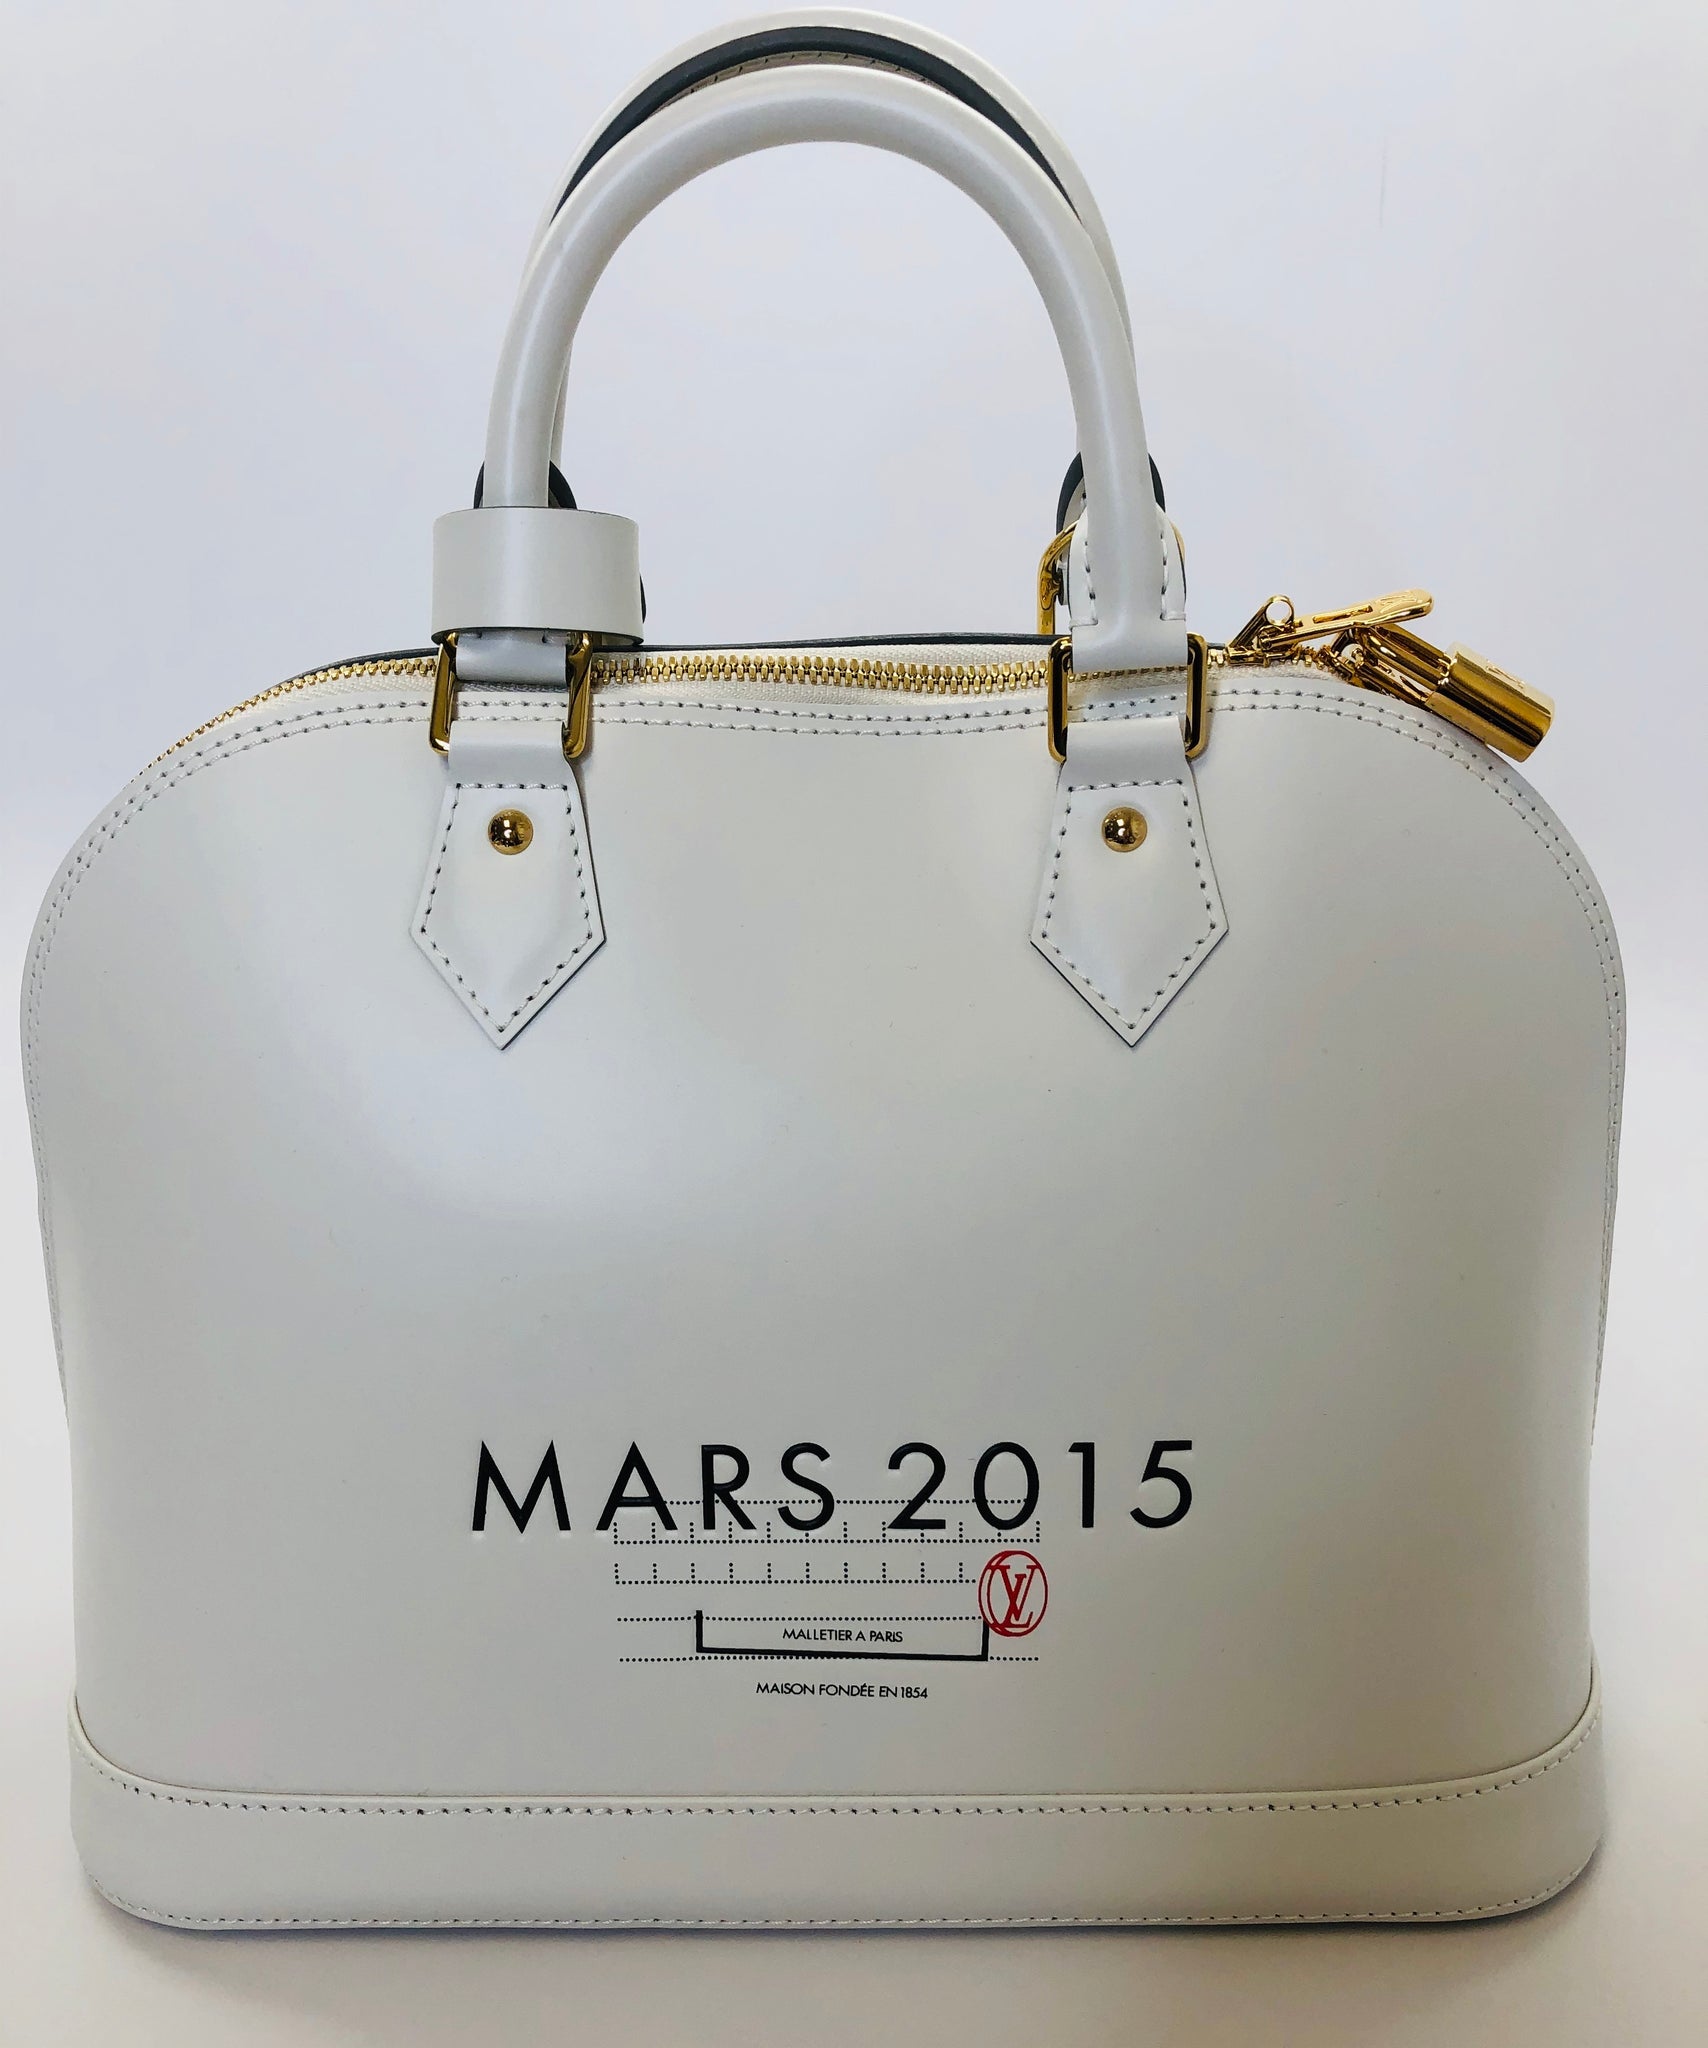 Louis Vuitton Cover Bag MALLETIERA PARIS MAISON FO